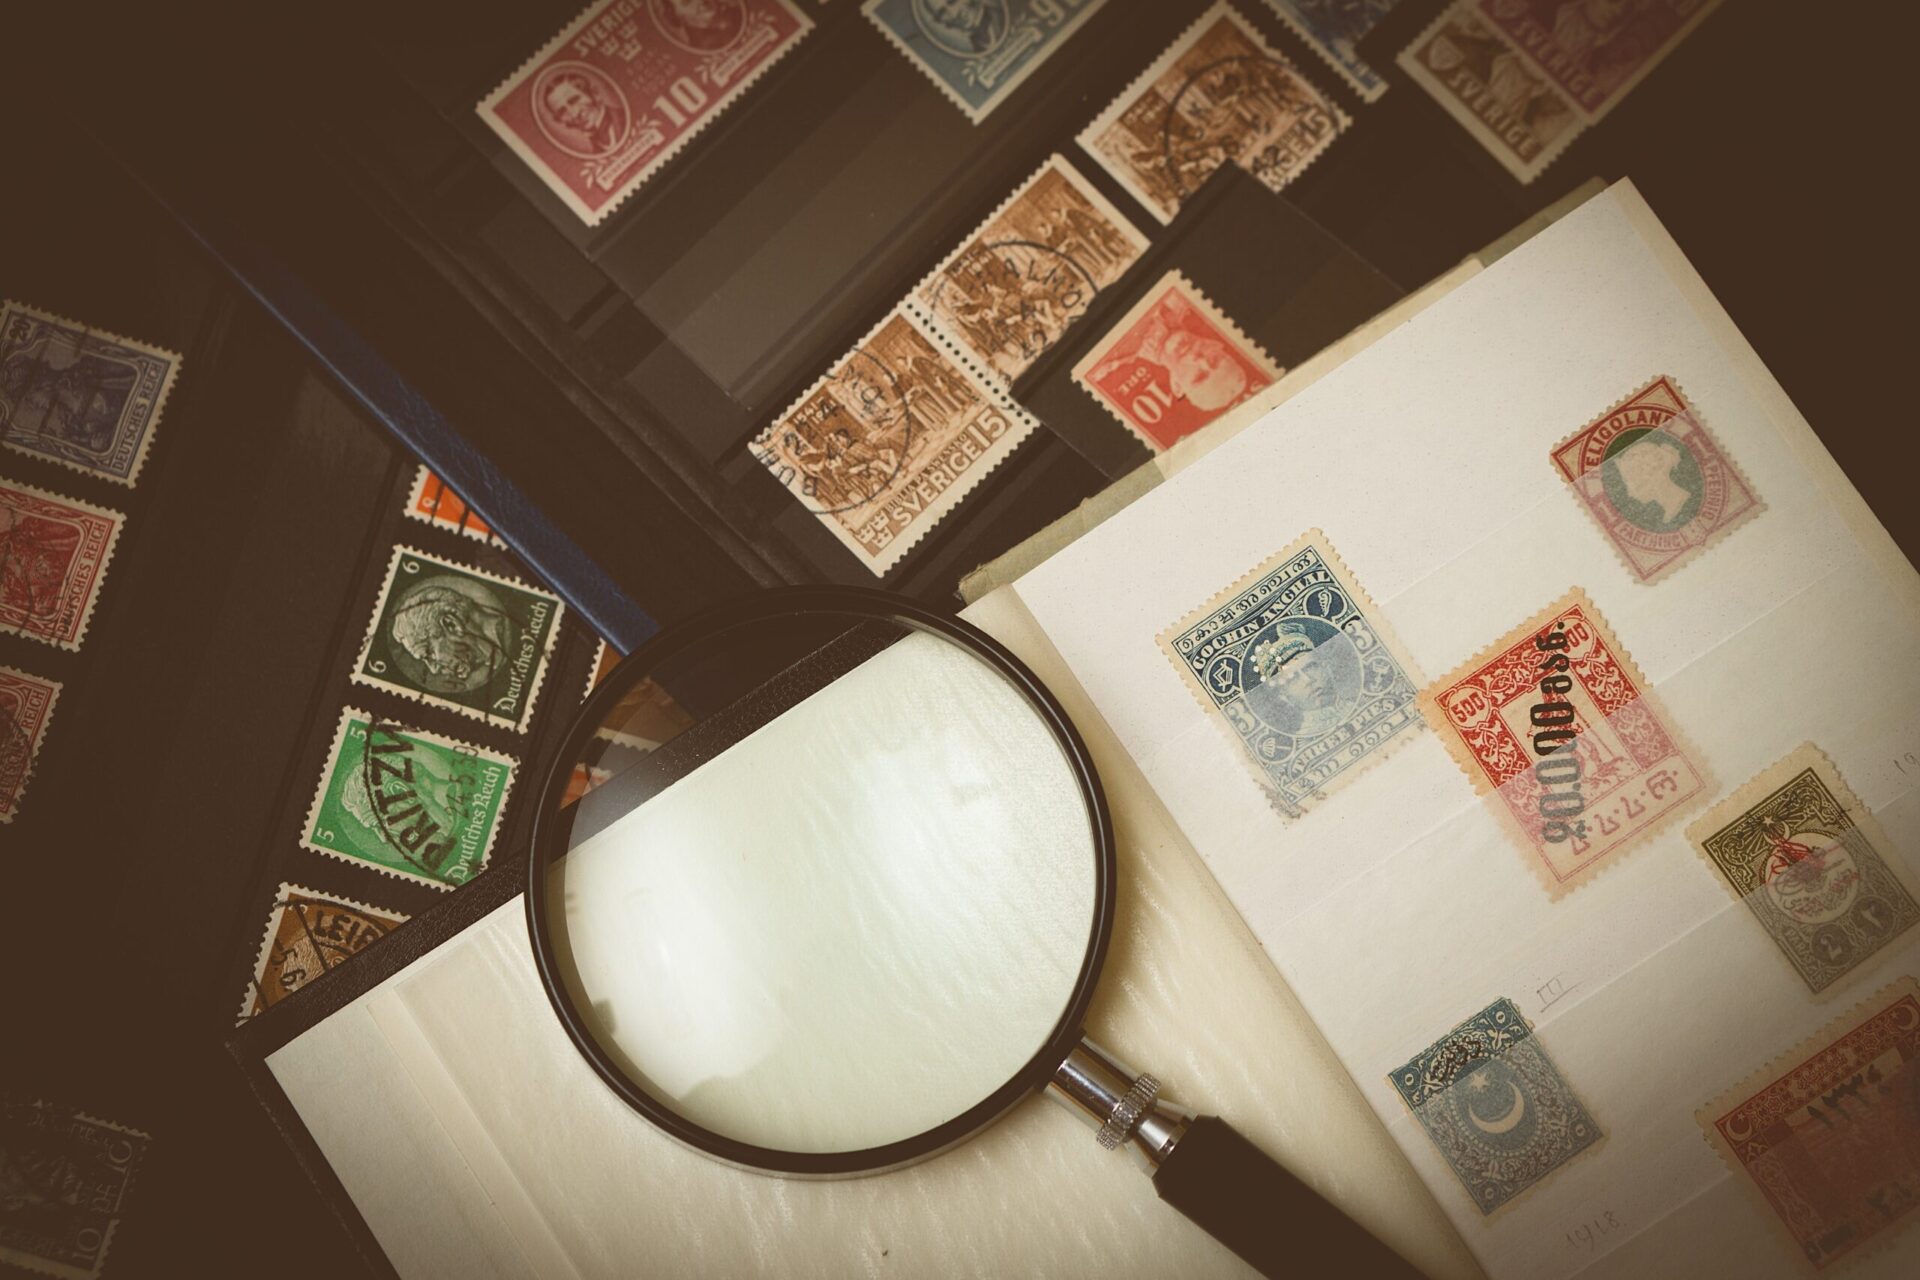 7 Ways to Identify A Stamp